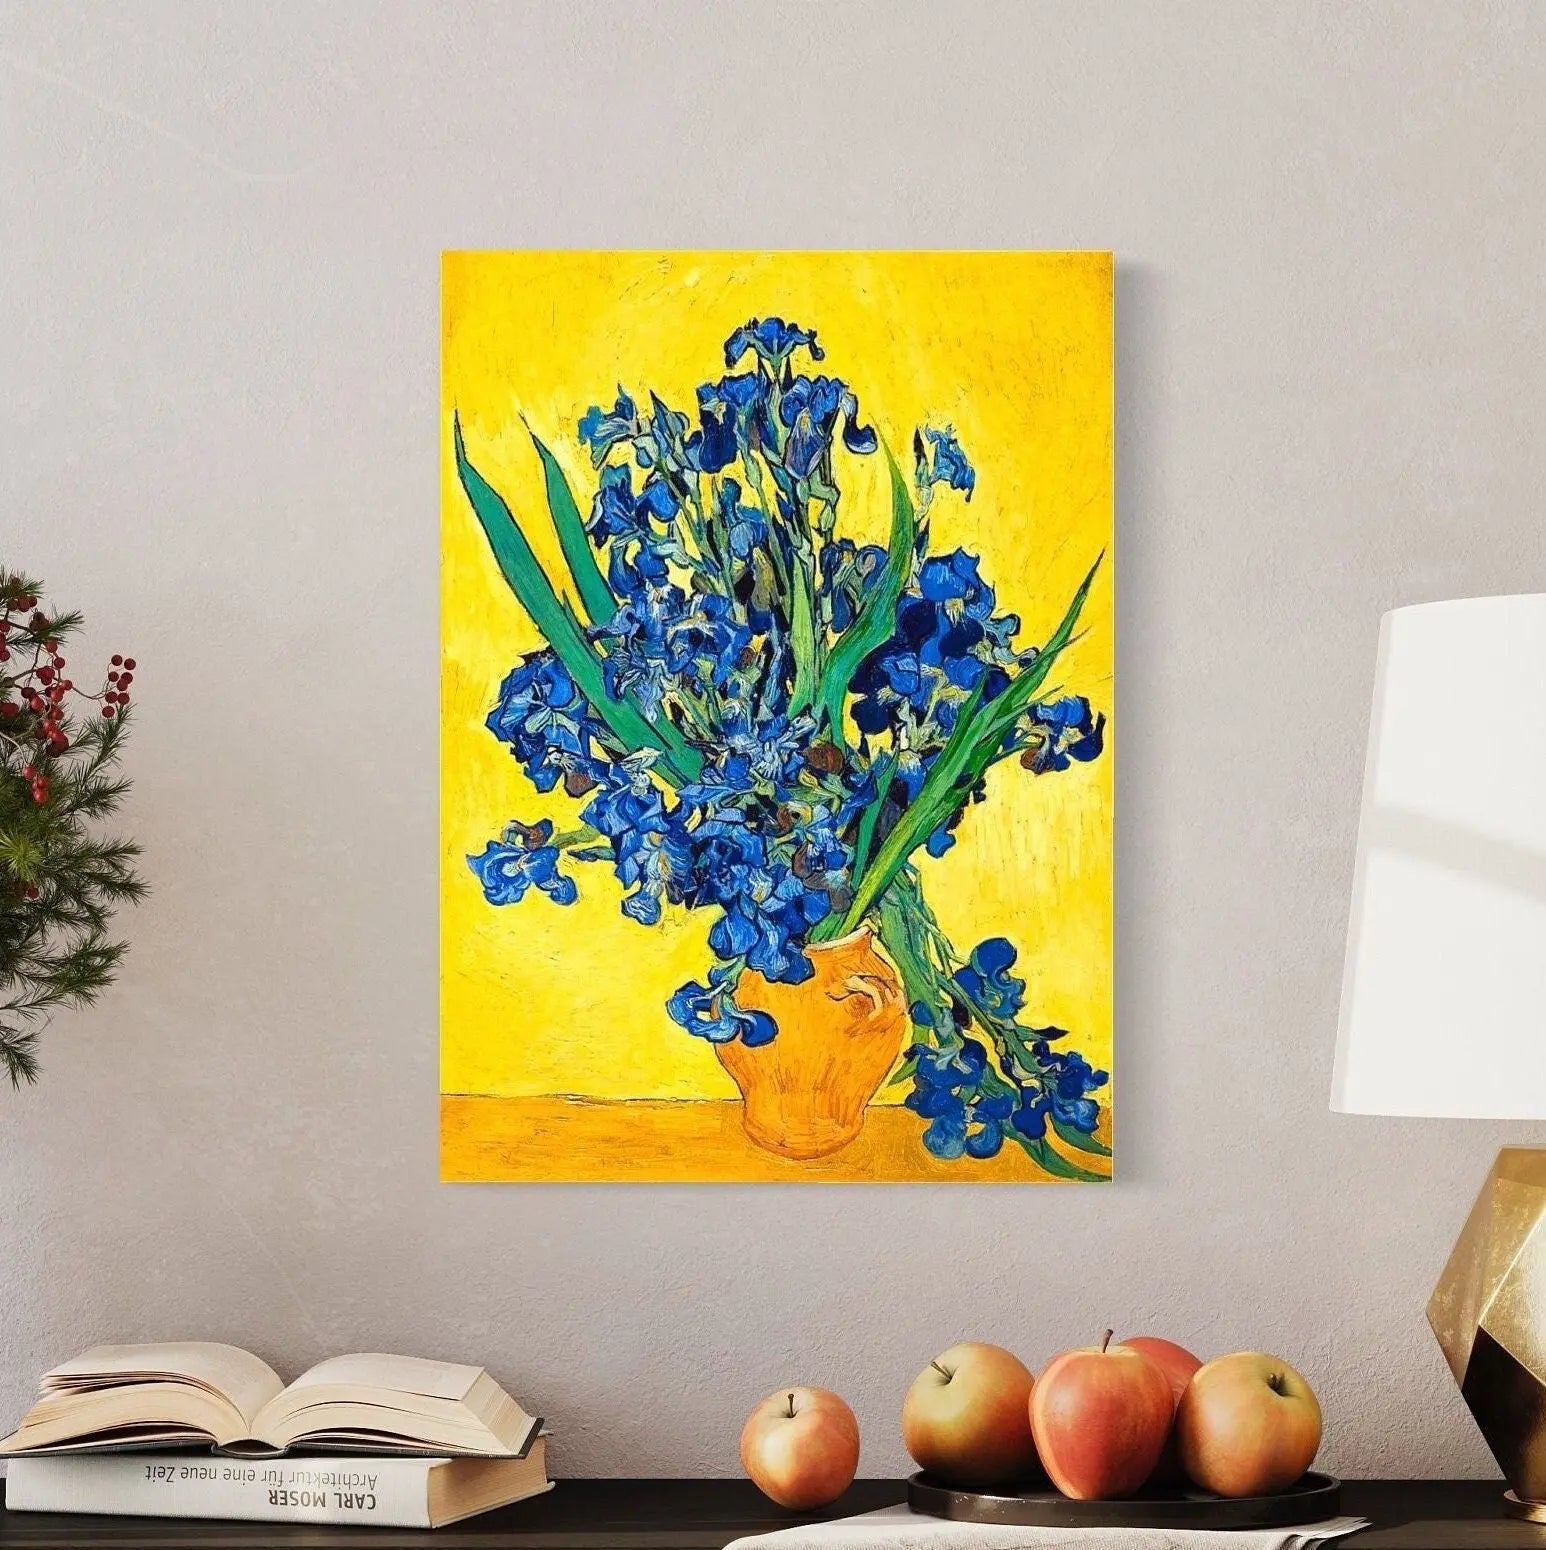 Vincent van Gogh 'Irises in a Vase' 1890 Canvas Wall Art | Poster Print - Canvastoria